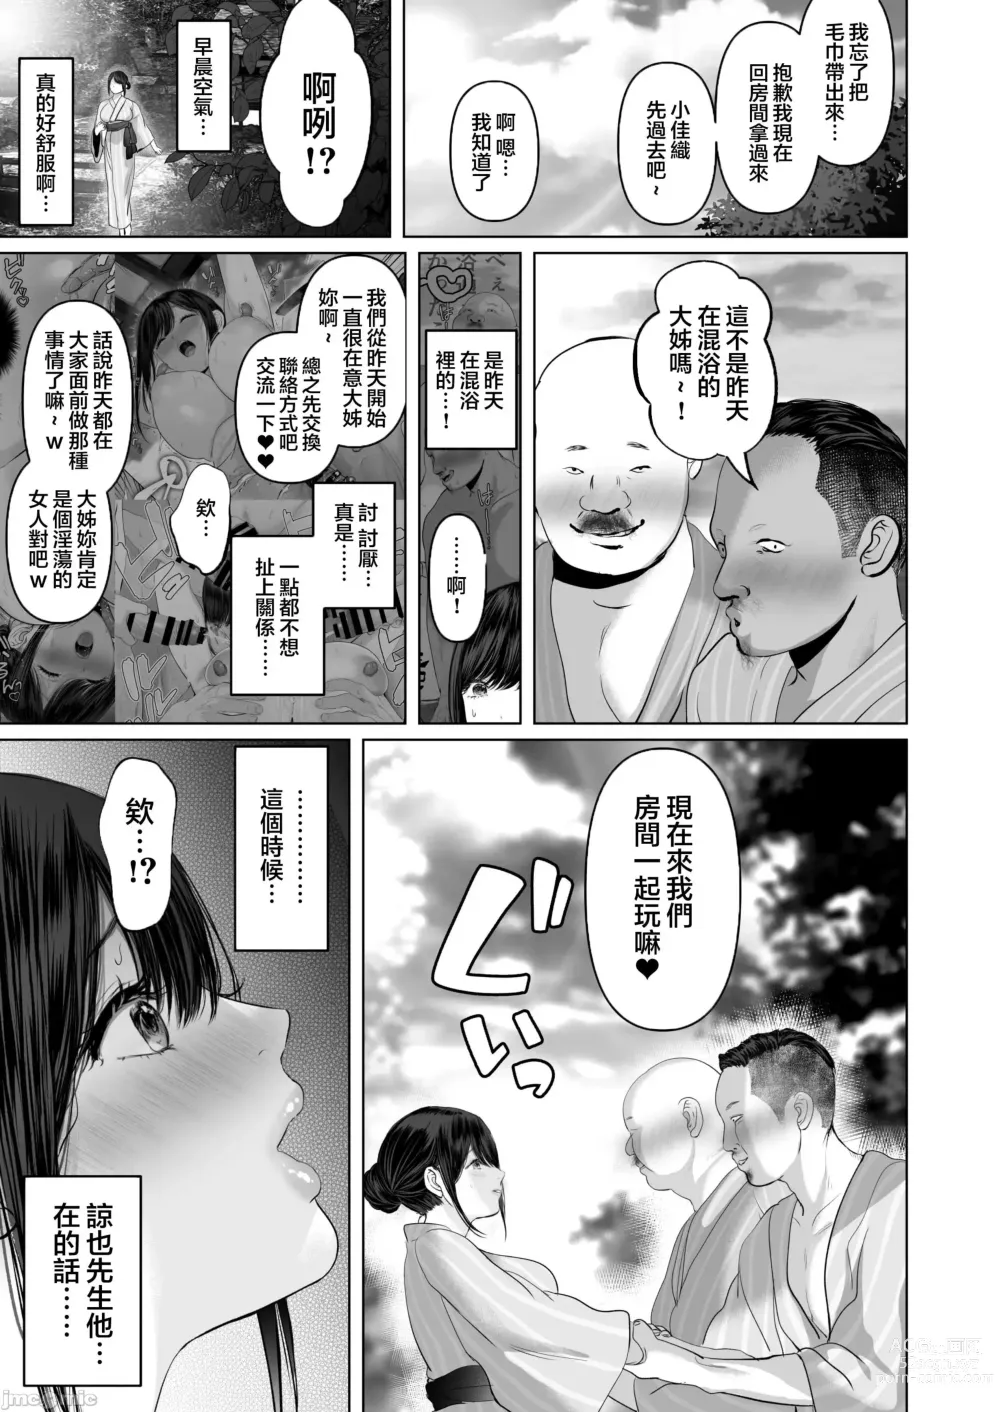 Page 550 of doujinshi Anata ga Nozomu nara 1-5